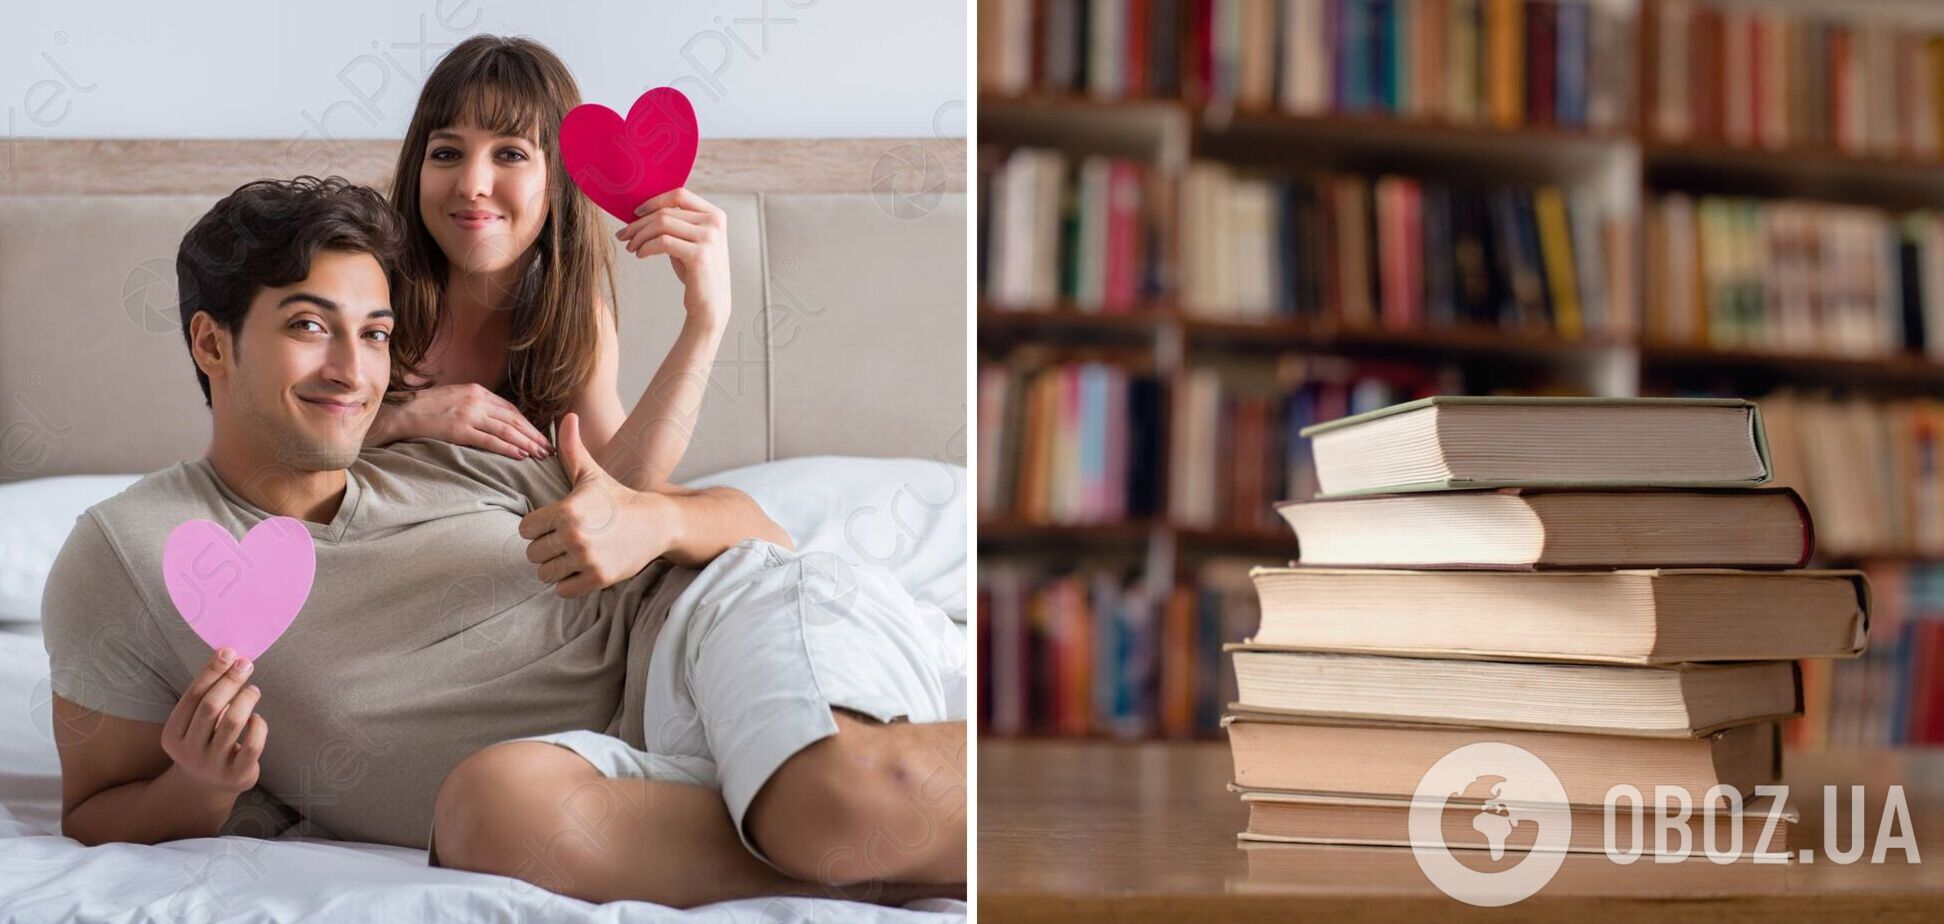 Пять книг о сексе, которые стоит прочесть. Рекомендует сексолог